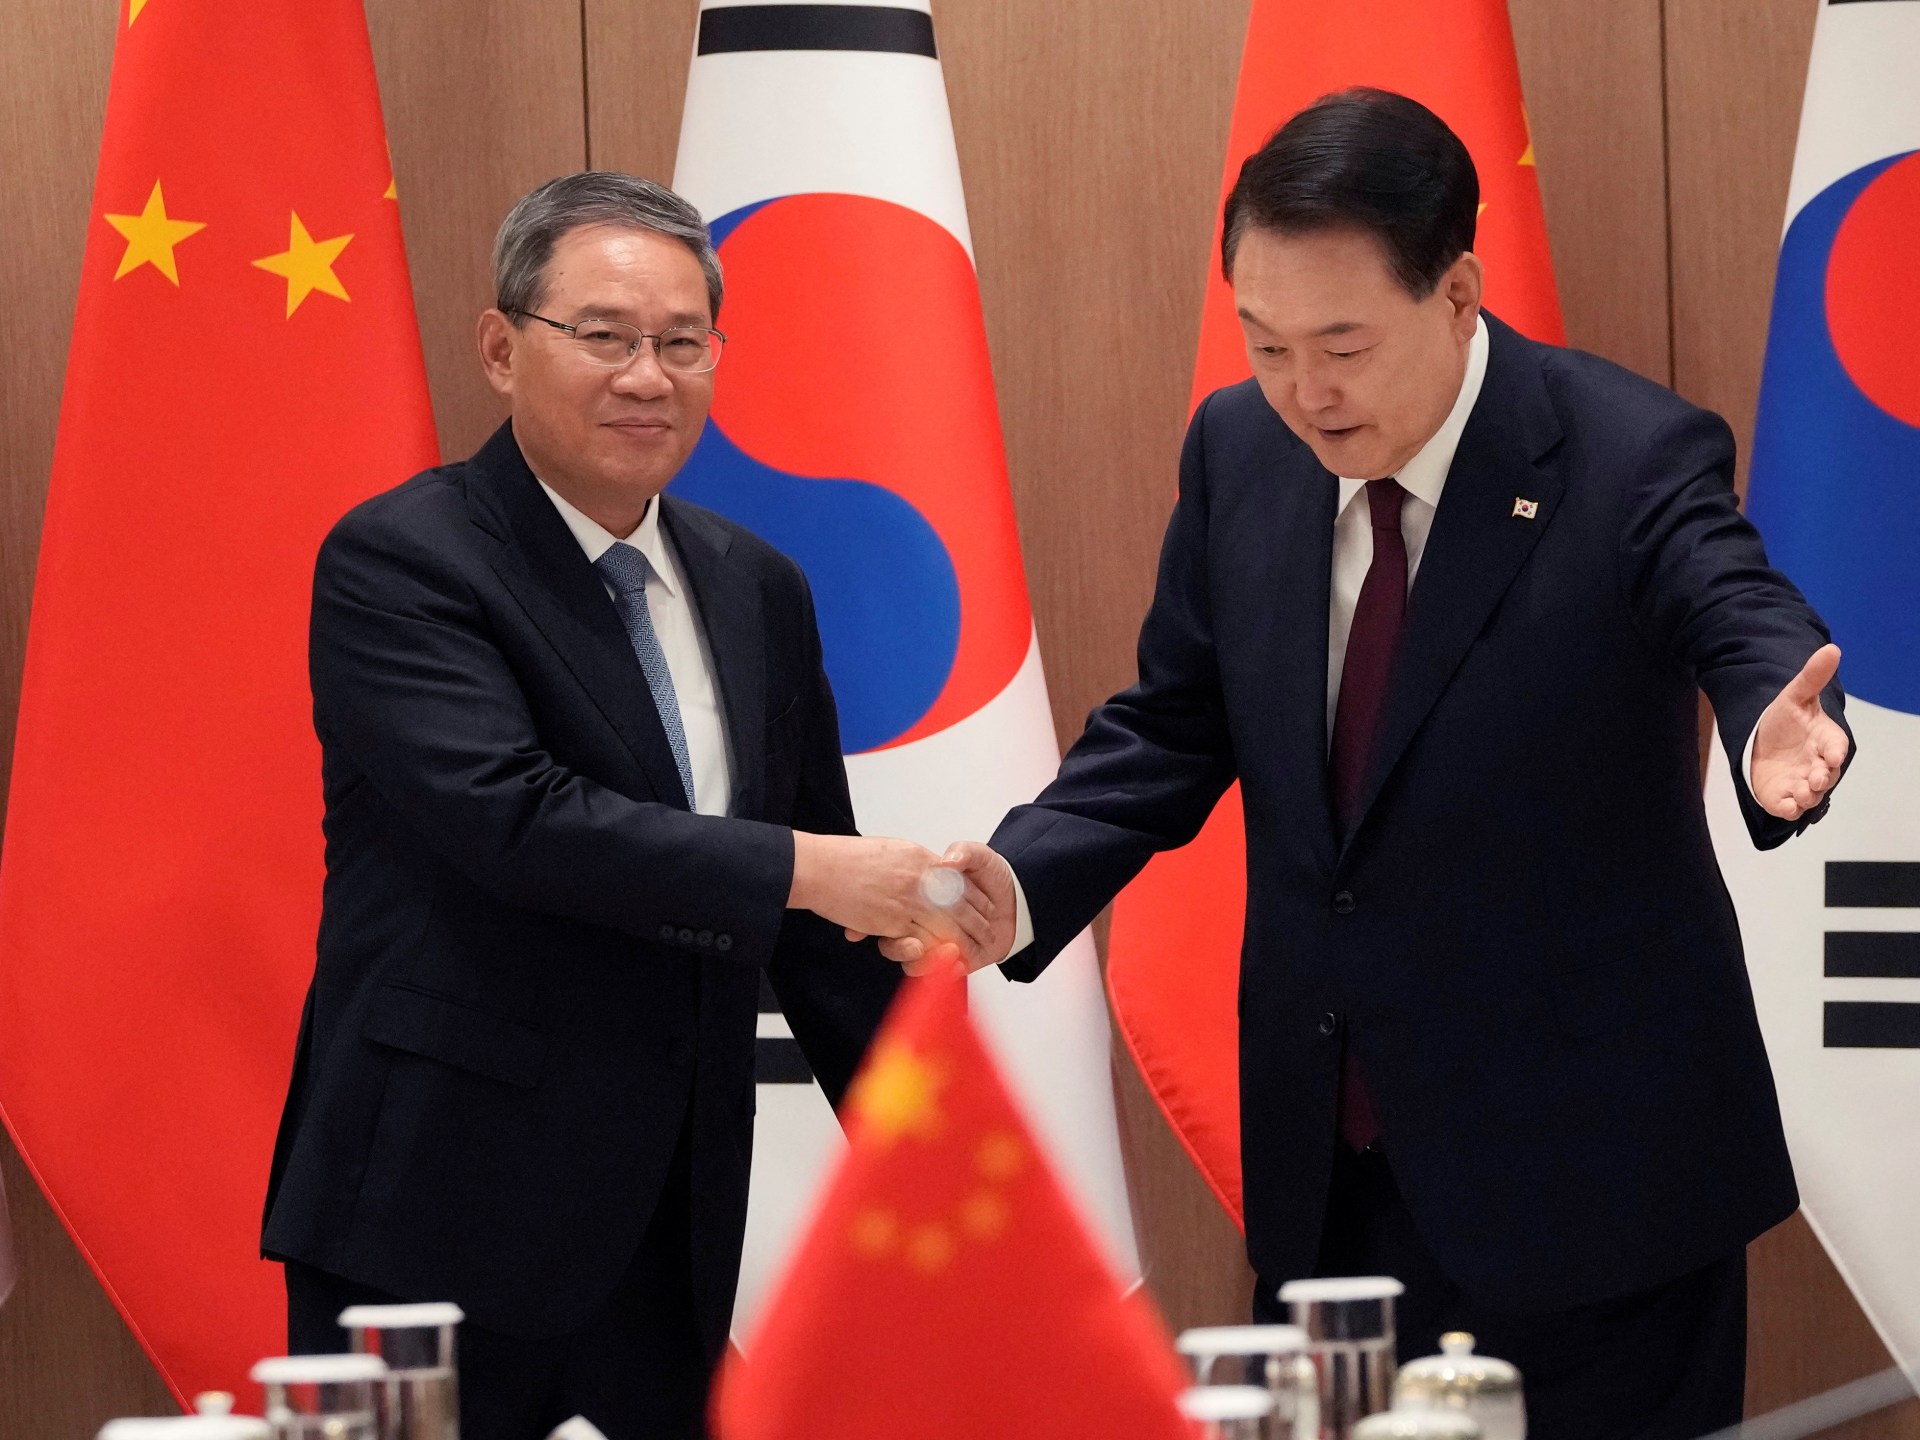 Líderes de China y Corea del Sur se reúnen antes de conversaciones trilaterales con Japón |  Noticias